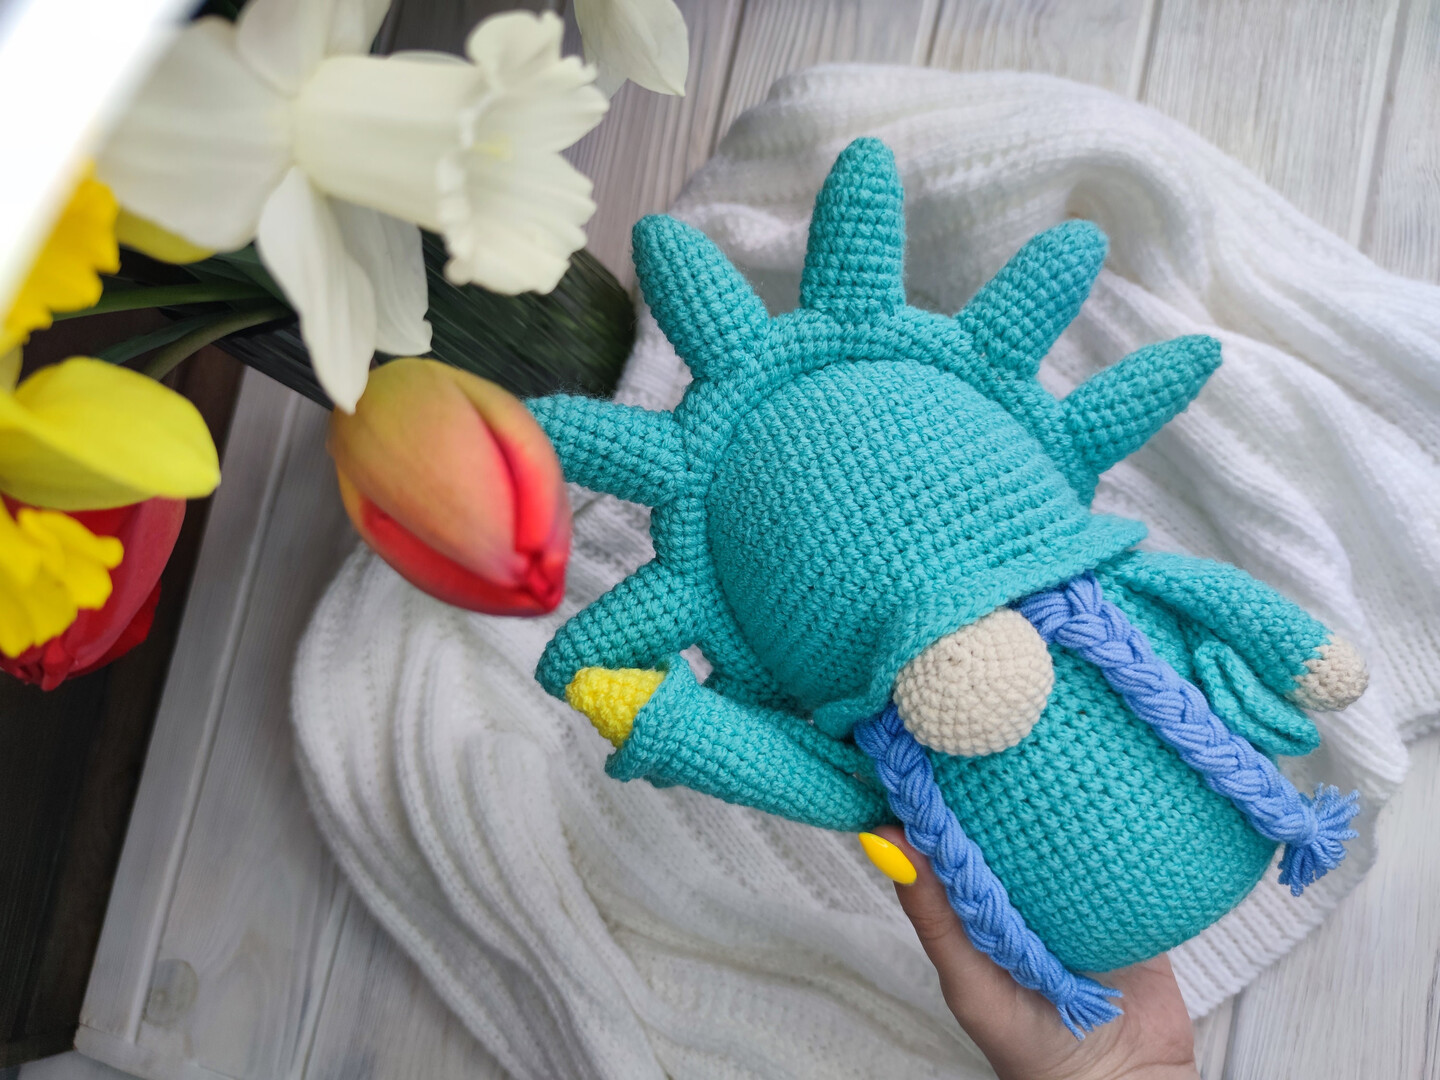 Hamster Crochet Kit Hamster Amigurumi Kit DIY Your Own Stuffed Animal Plush  Crochet Lover Gift 